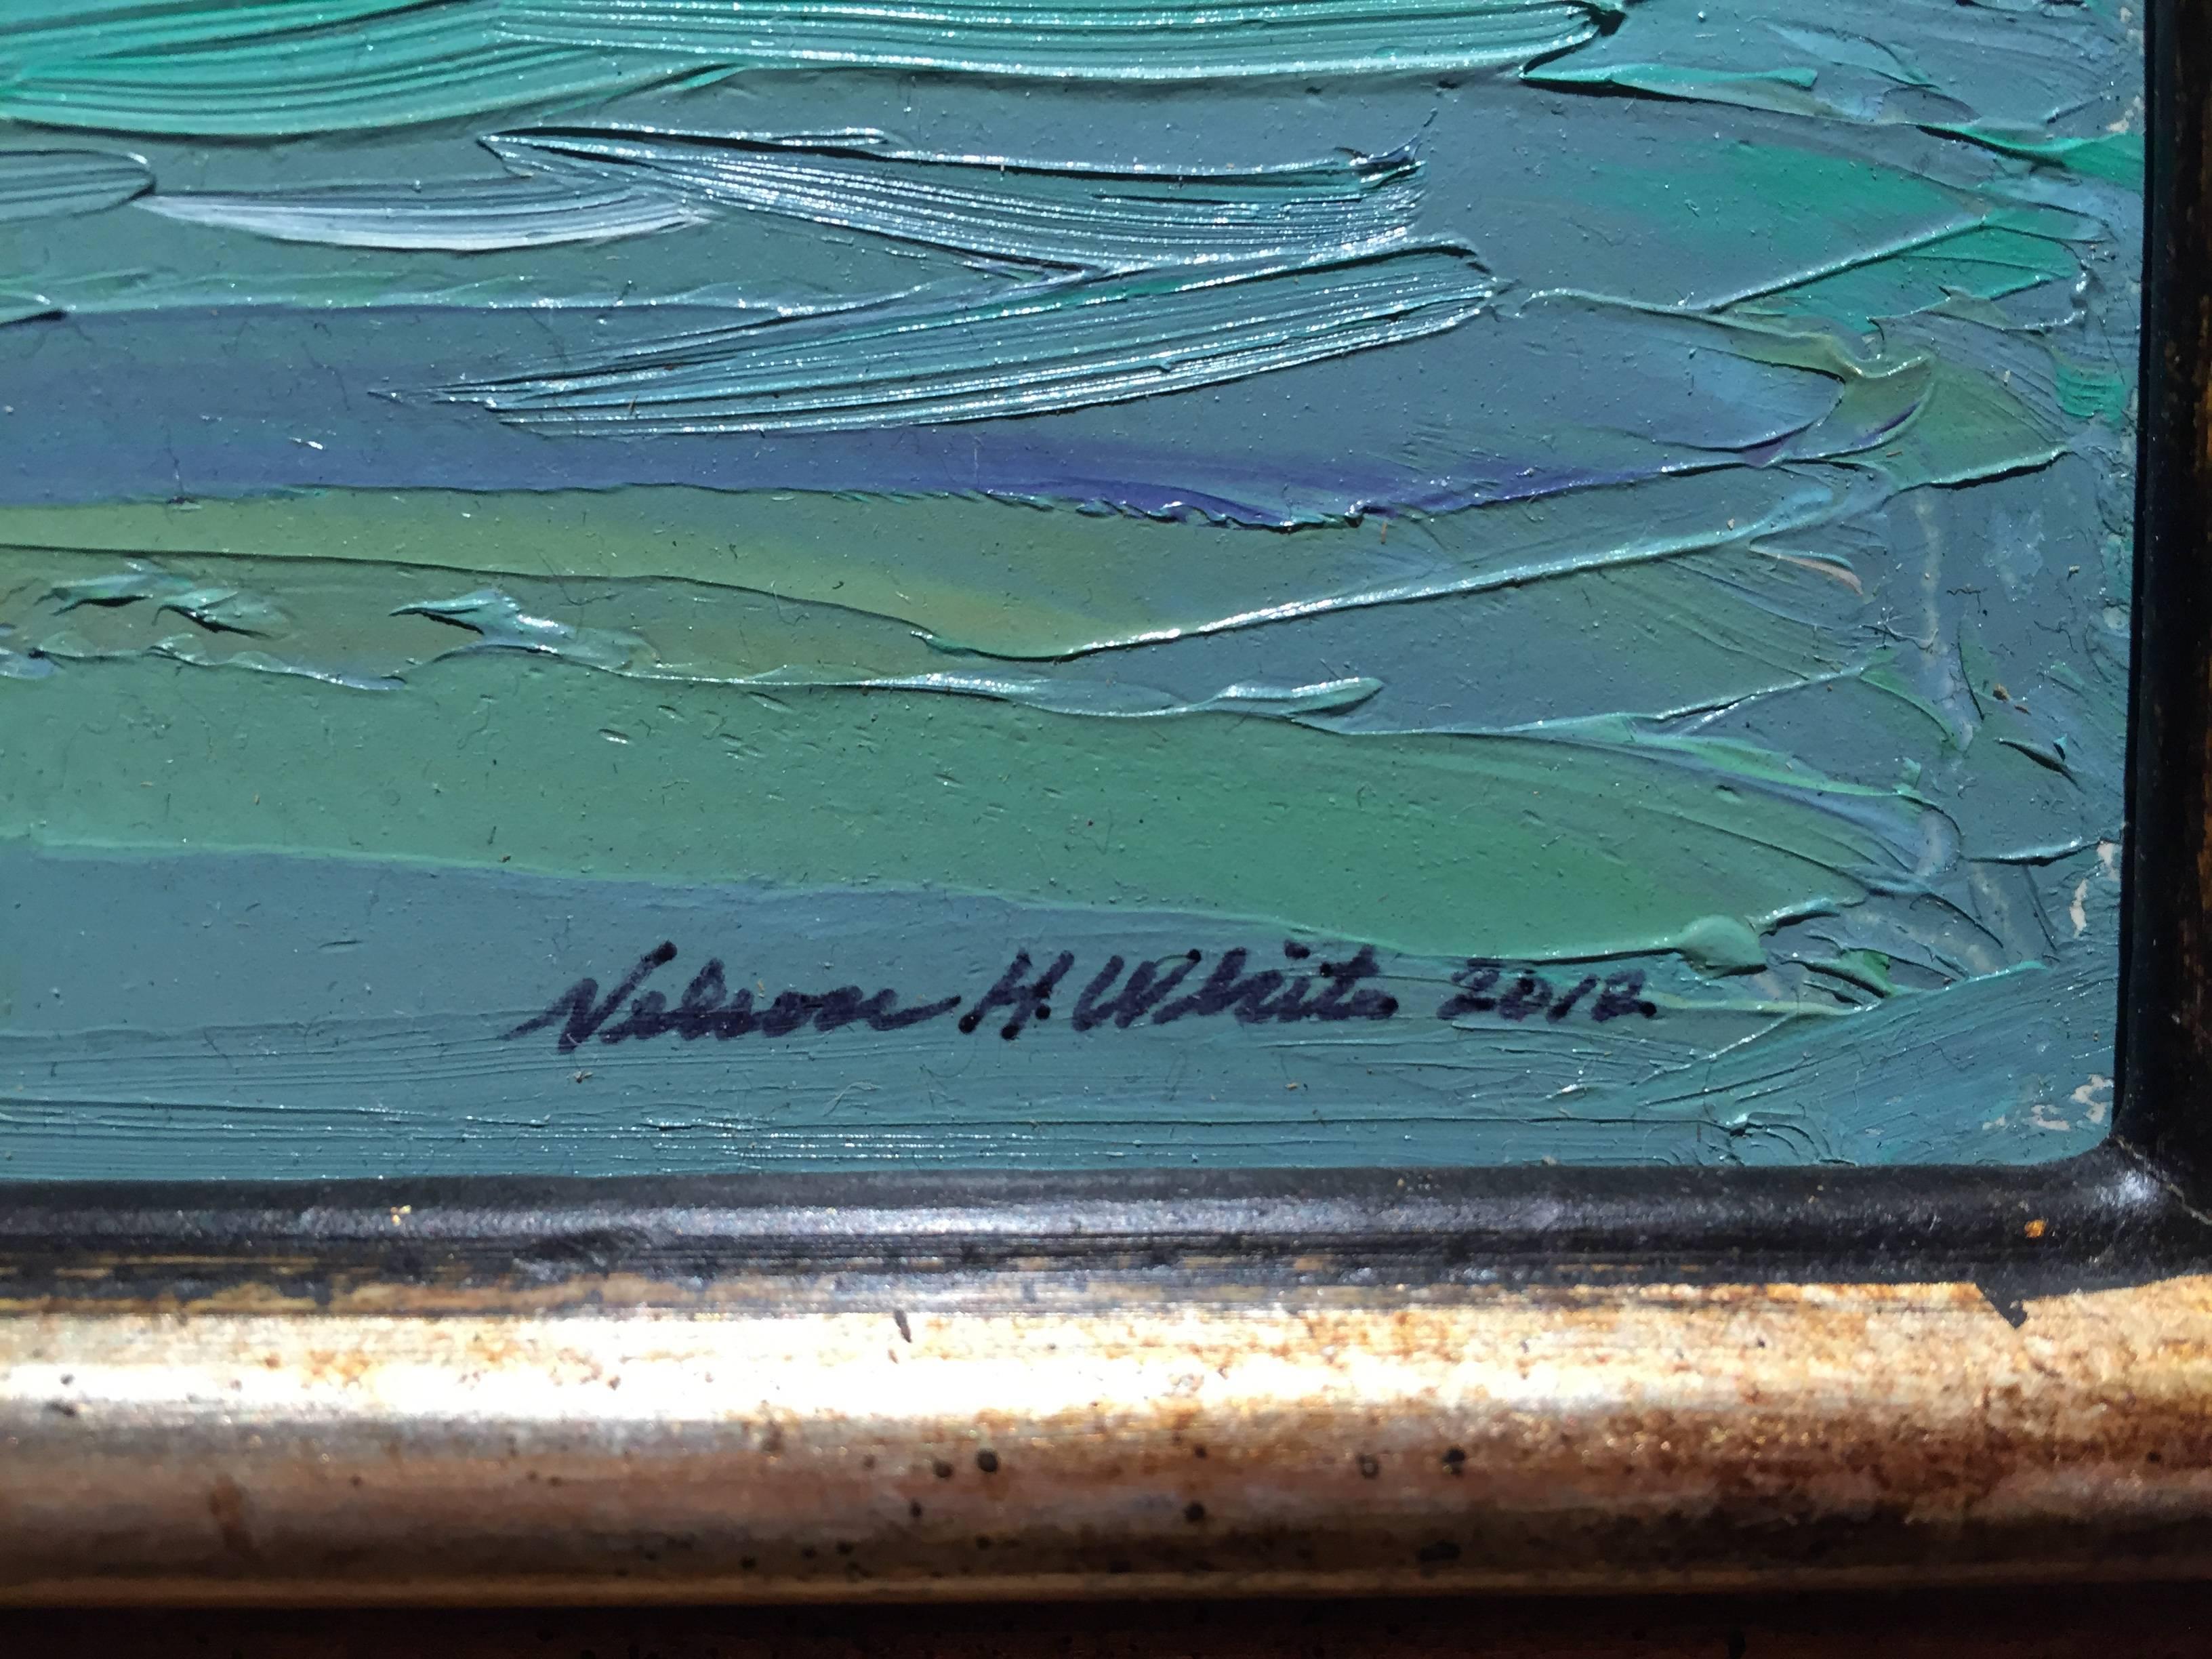 Peint en plein air sur une plage des Bahamas.

Nelson H. White est né à New London, dans le Connecticut, en 1932. White a été entouré d'art et d'artistes dès sa naissance. Il a reçu ses premières leçons d'art de son grand-père, Henry Cooke White